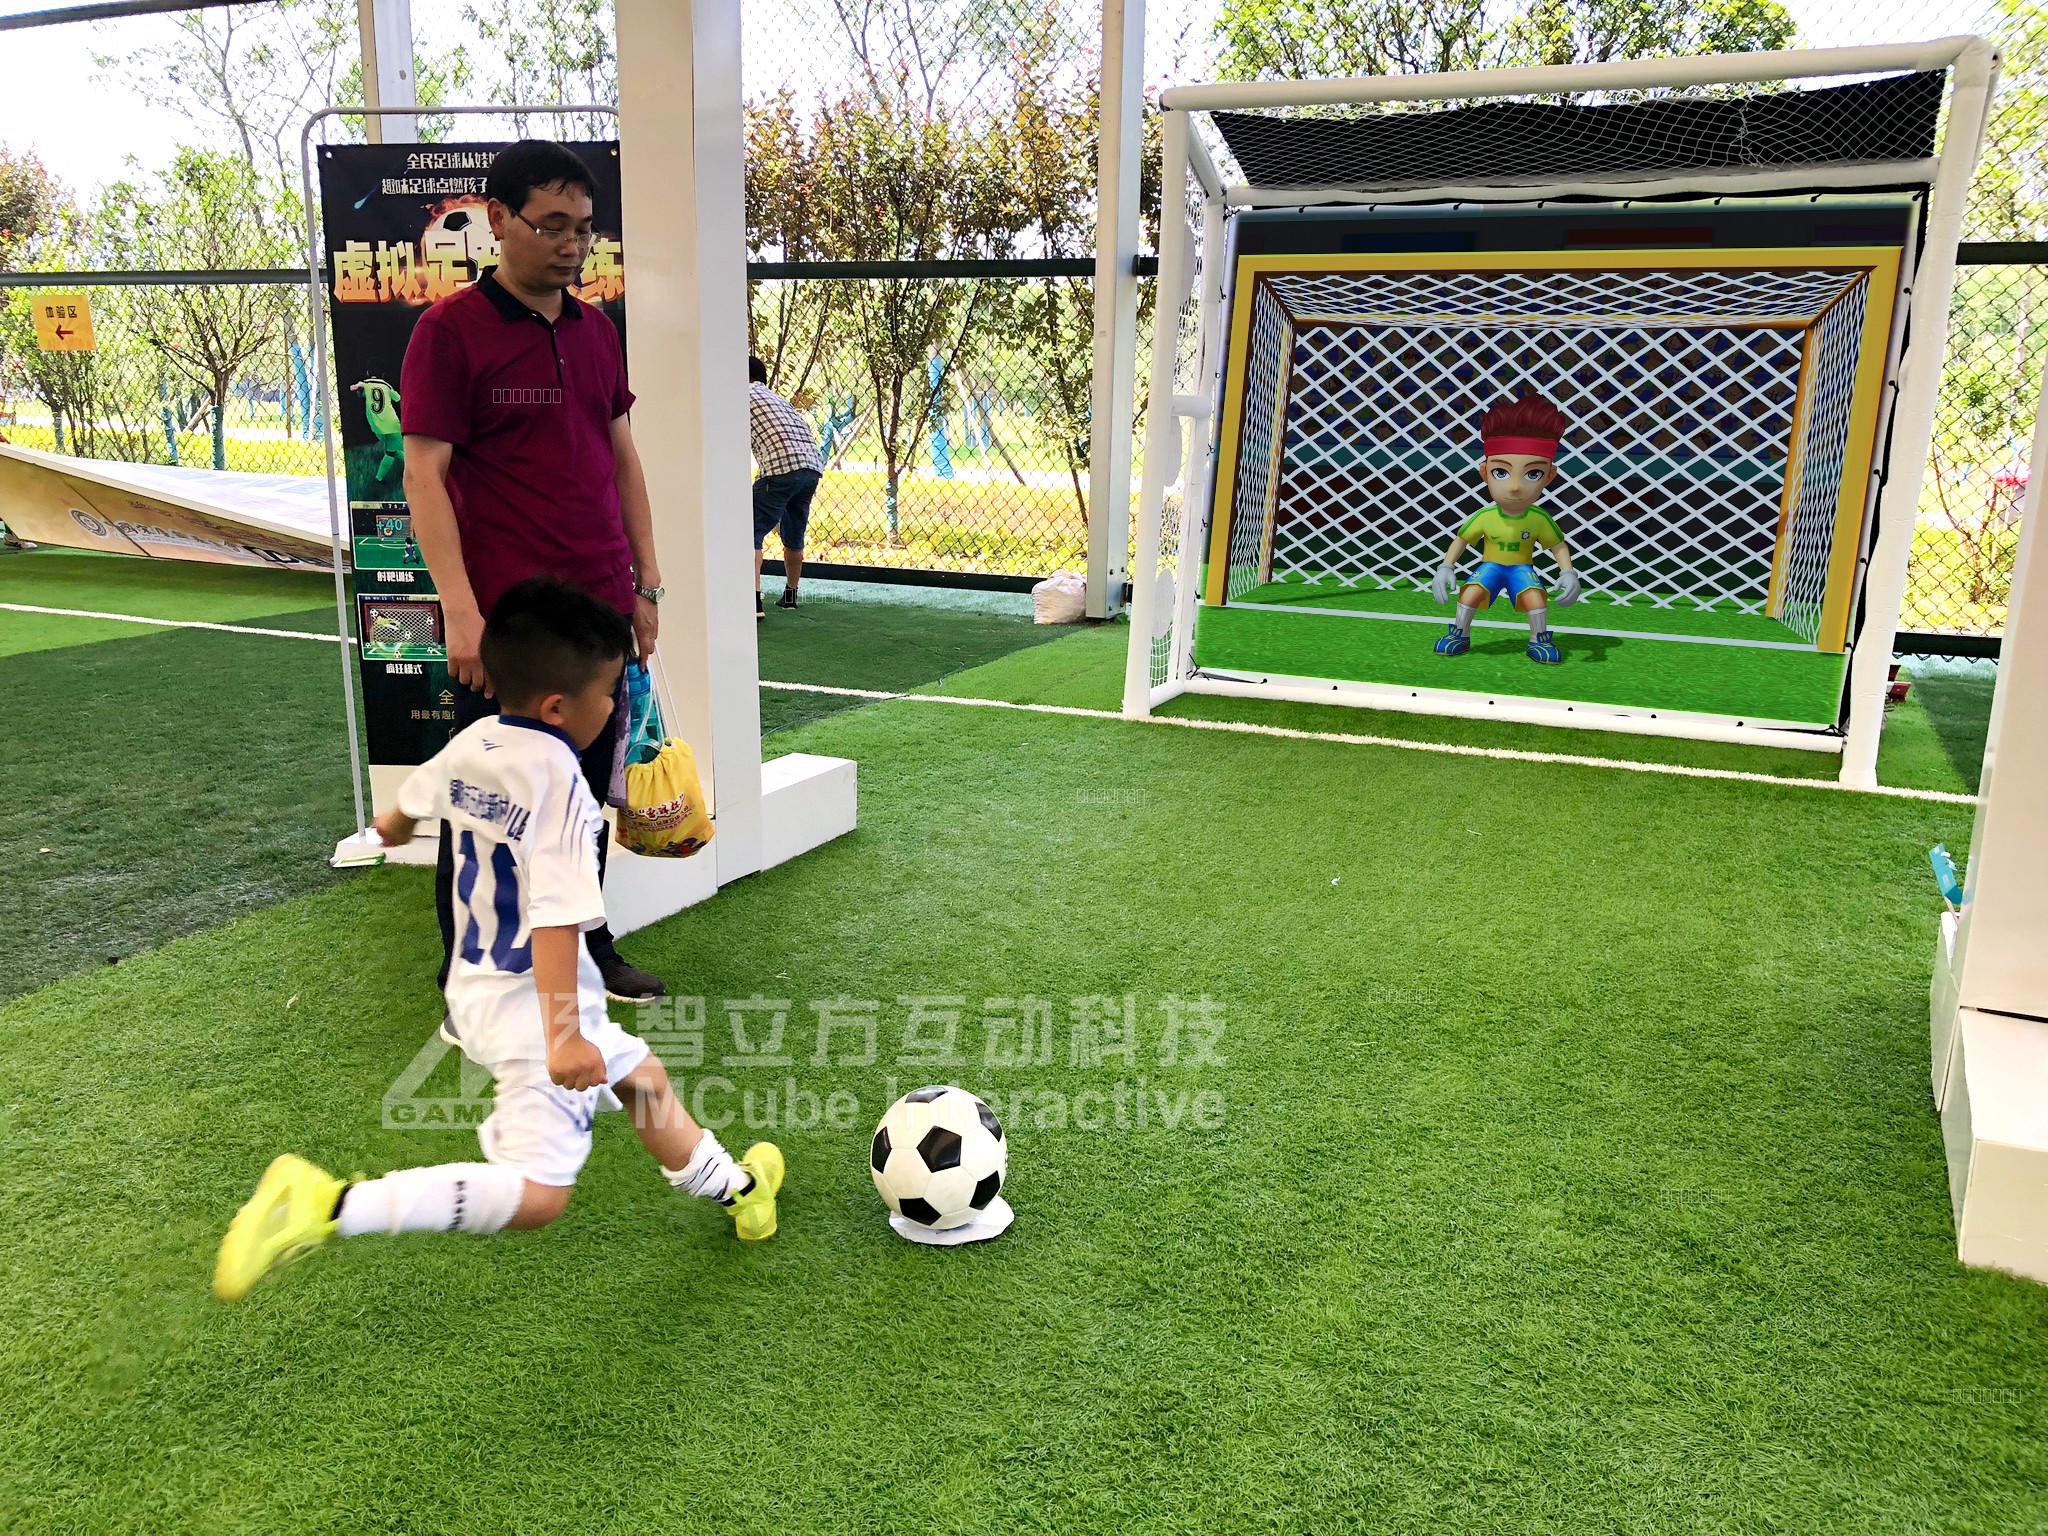 互动儿童乐园热门的互动投影游戏——虚拟足球！